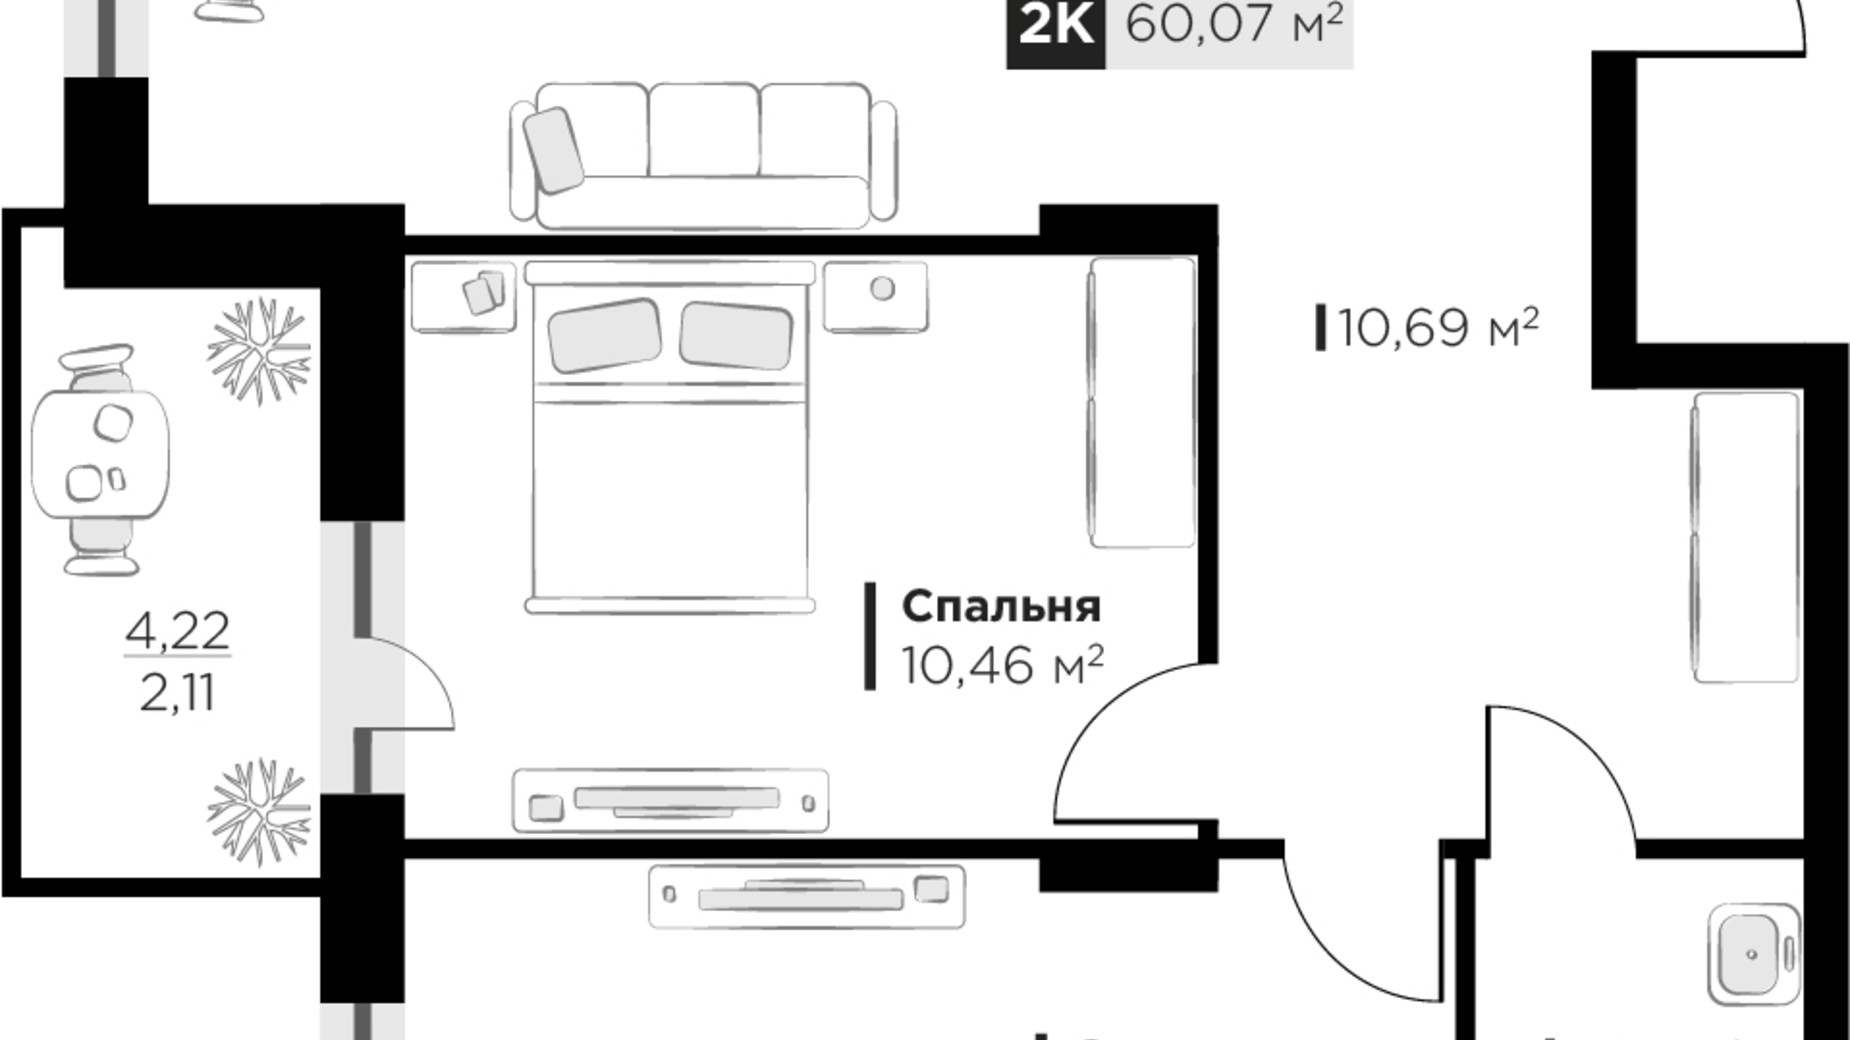 Планування 2-кімнатної квартири в ЖК SILENT PARK 60.07 м², фото 628679